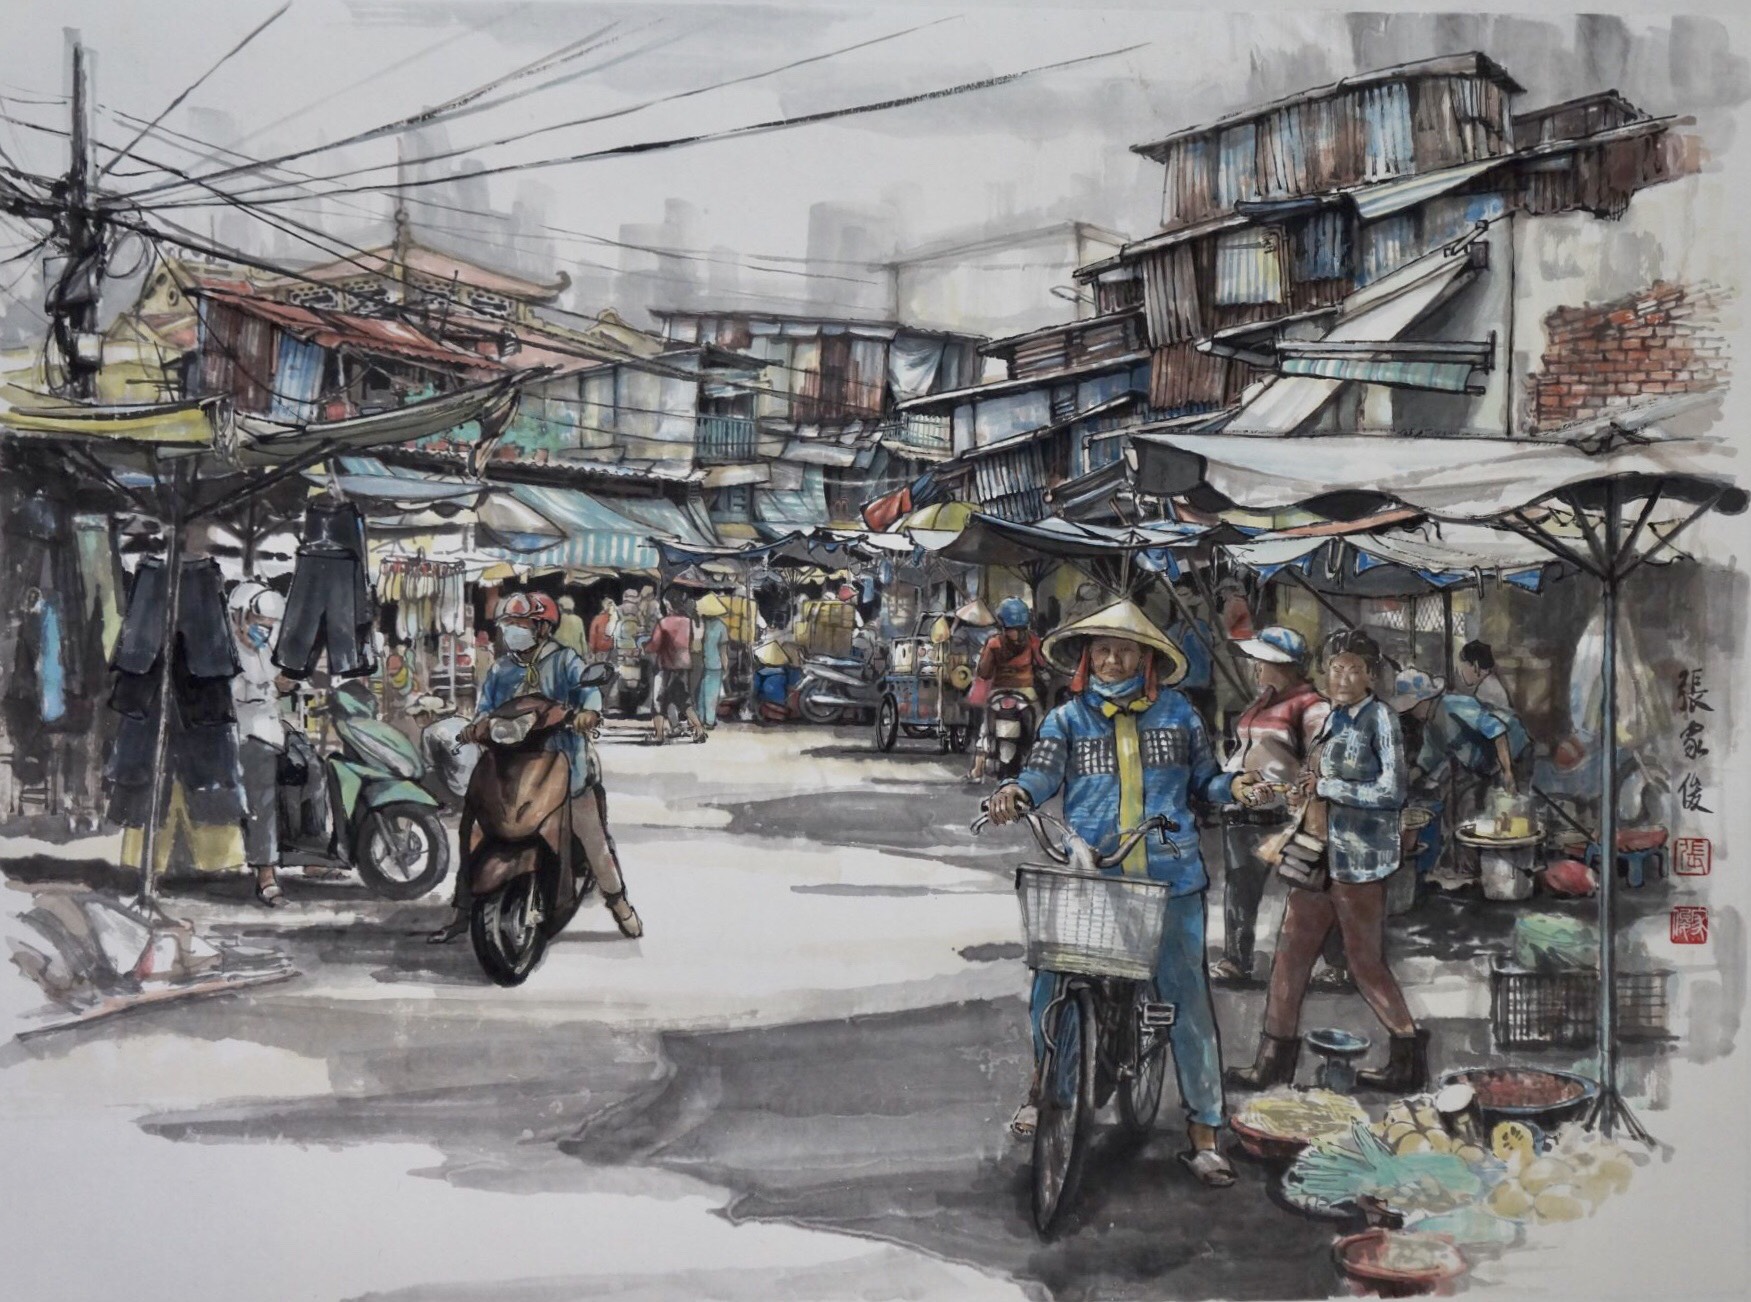 Chợ Lớn: Nơi mang đậm nét văn hóa truyền thống của người Hoa, Chợ Lớn luôn là điểm đến thú vị. Xem hình ảnh để khám phá về cái nhìn cổ điển và đầy màu sắc của khu phố này với những góc nhìn đặc biệt.